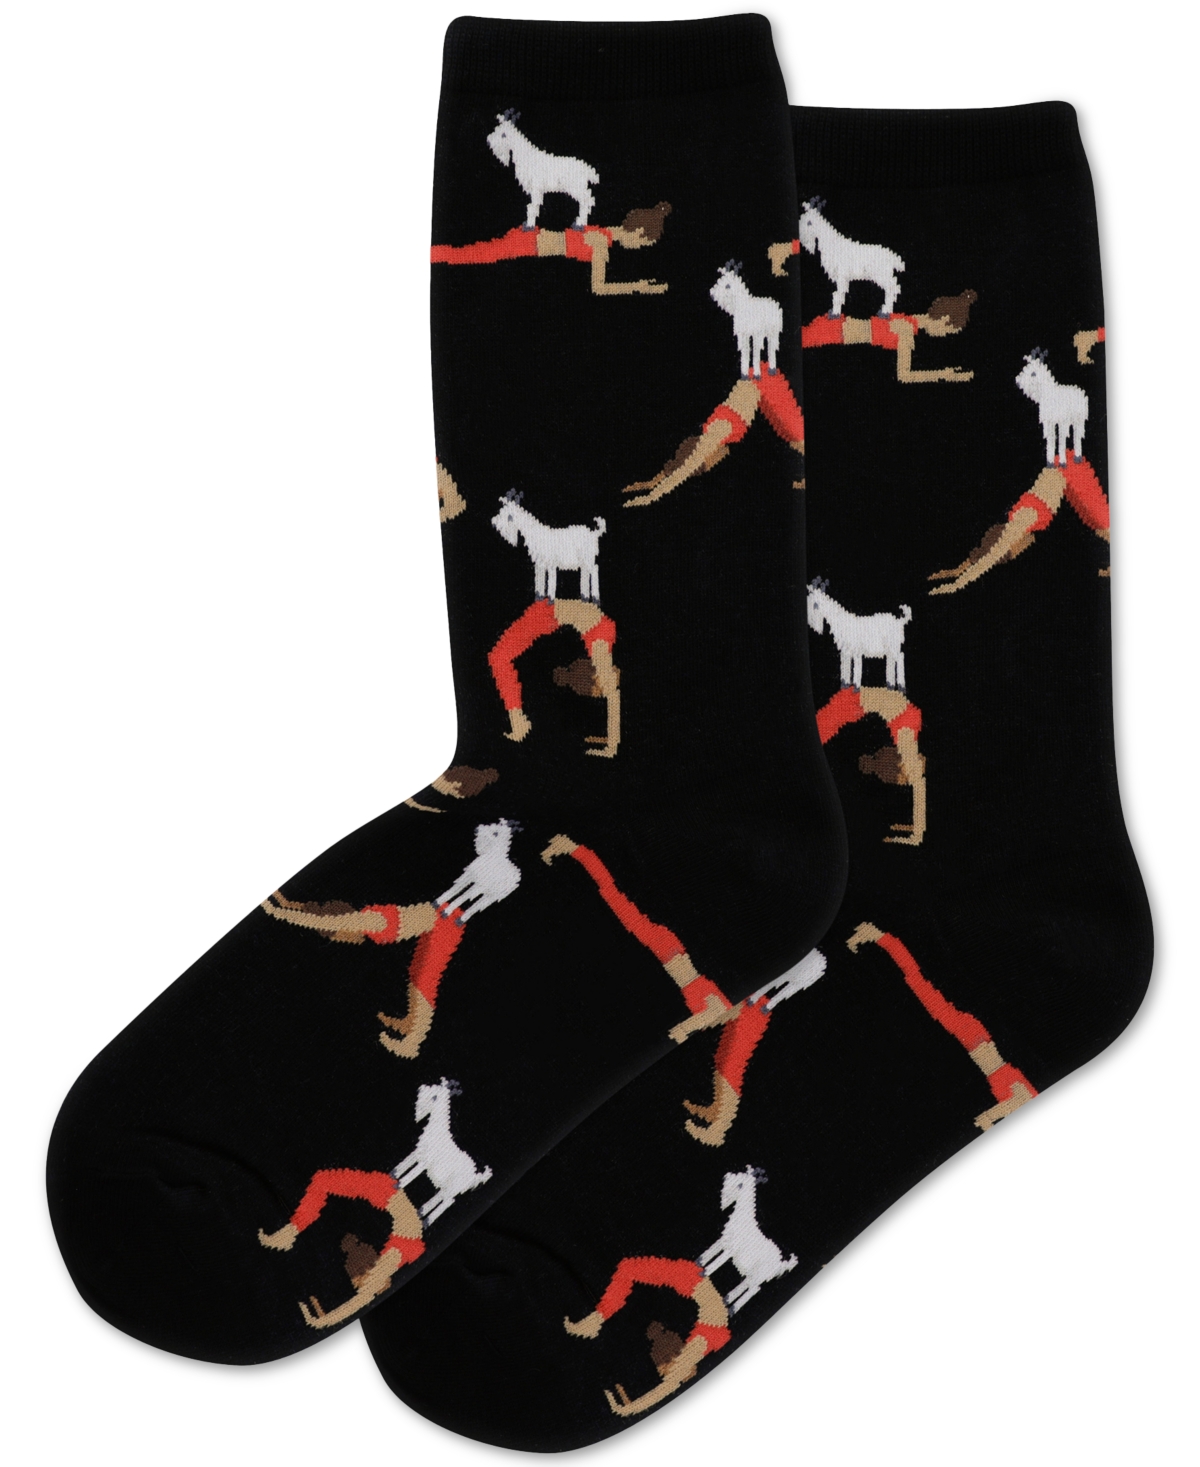 Women's Goat Yoga Crew Socks - Black